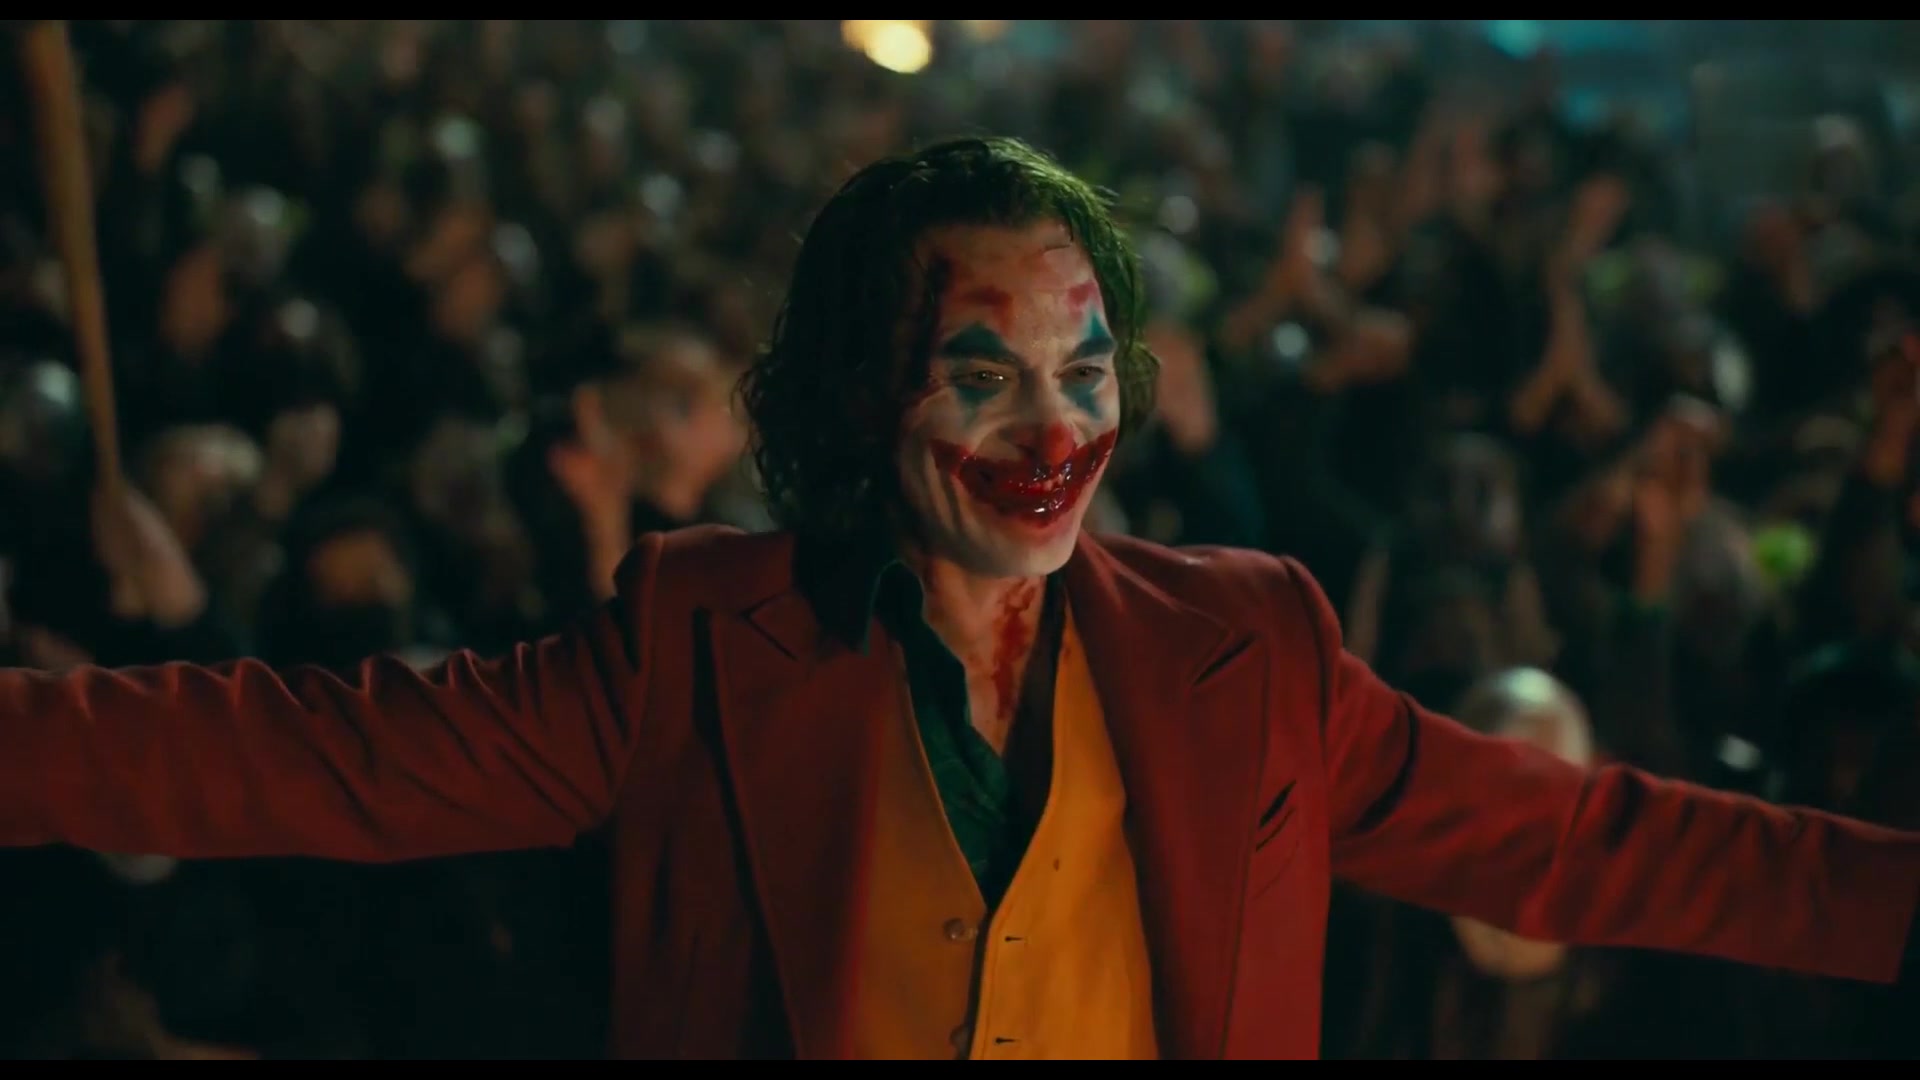 小丑joker2019亚瑟用血在脸上画出笑容整个城市为其欢呼片尾特写